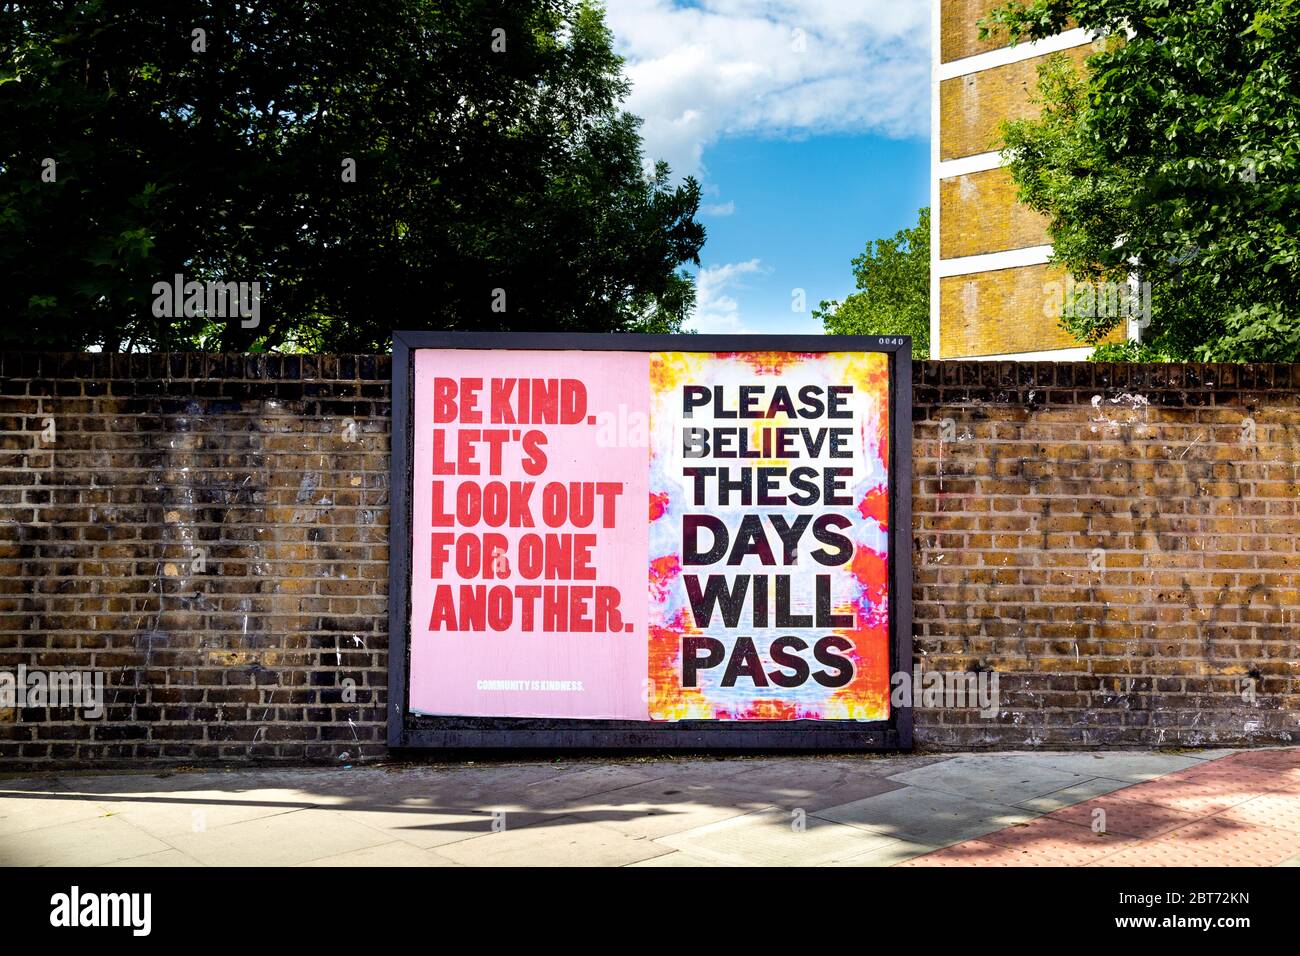 22 maggio 2020 Londra, Regno Unito - segni di incoraggiamento a Stoke Newington durante l'epidemia di coronavirus, 'Be Kind Let's Look out for other' e 'Please Believe These Days Will Pass' Foto Stock